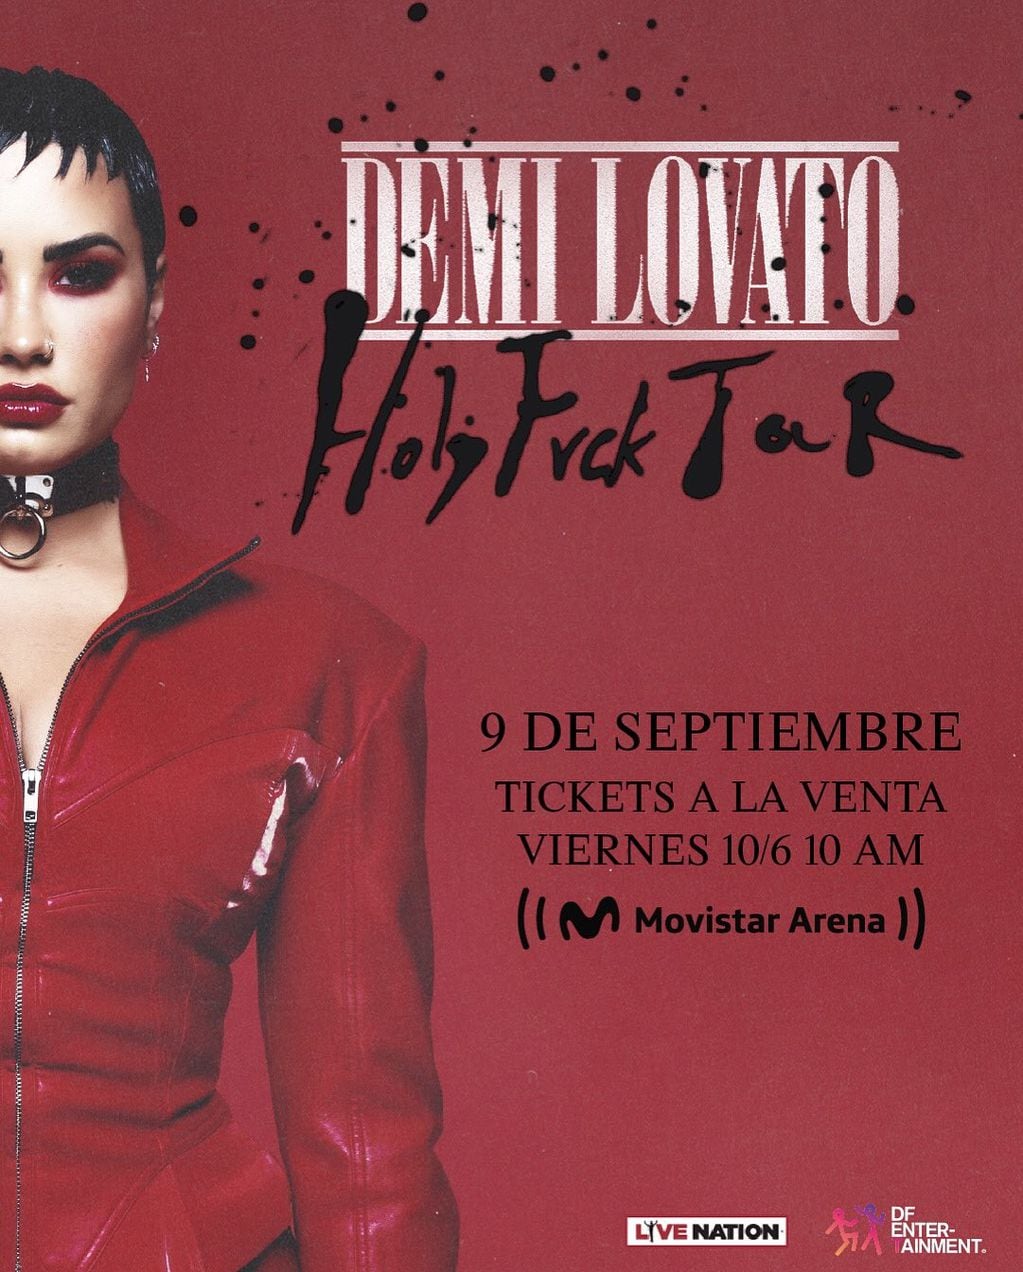 Demi Lovato en Argentina: 9 de septiembre en el Movistar Arena (DF Entertainment)